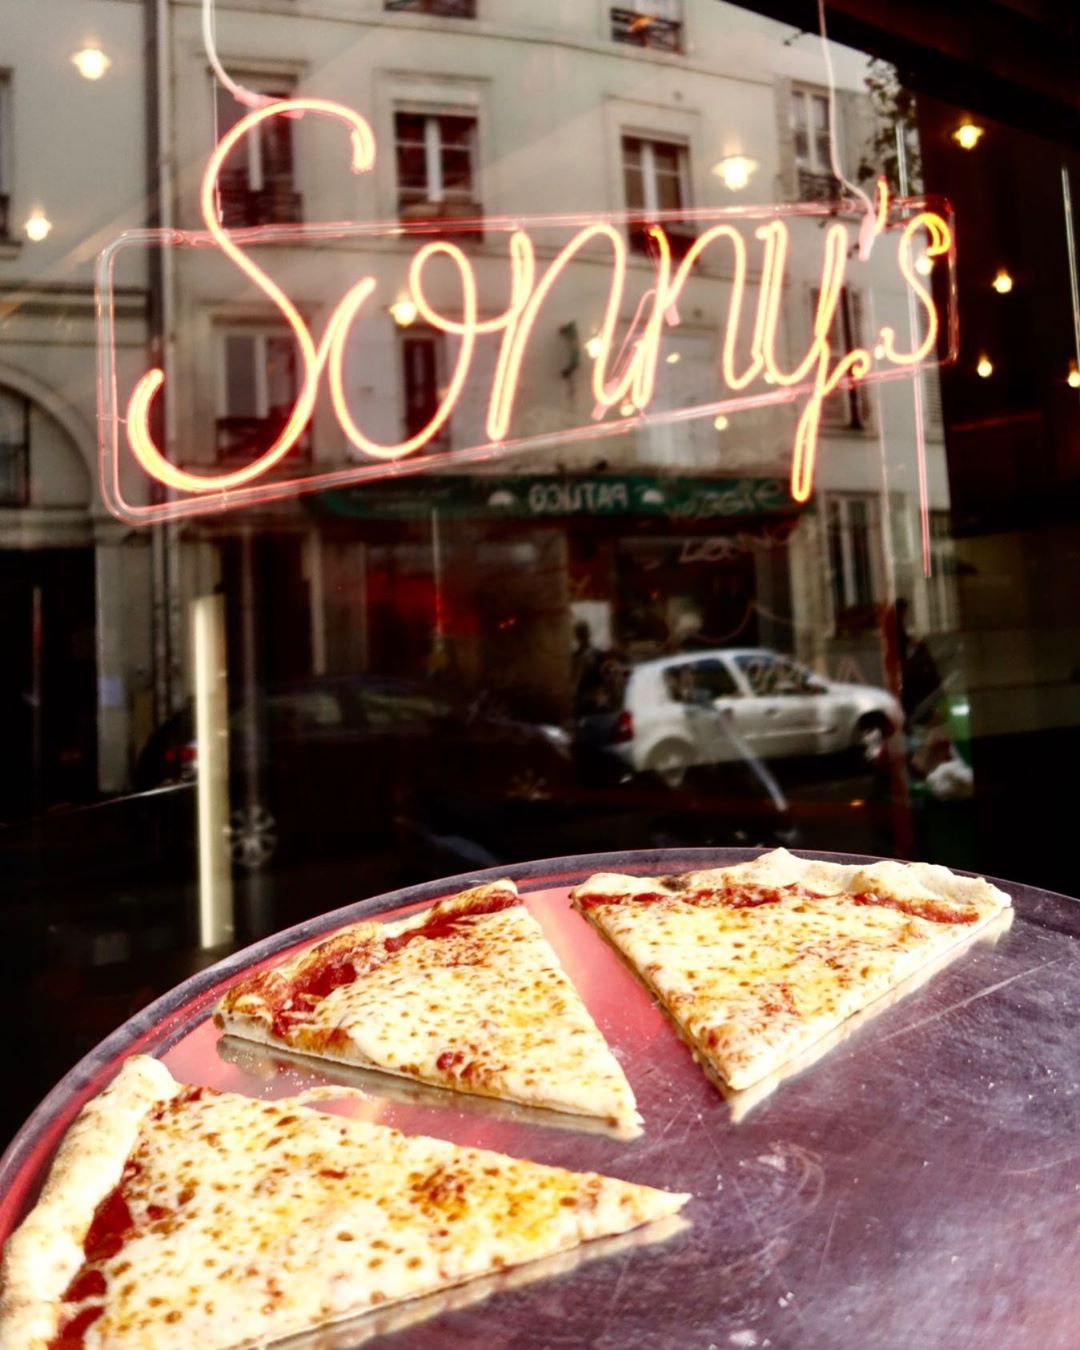 sonny's pizza paris